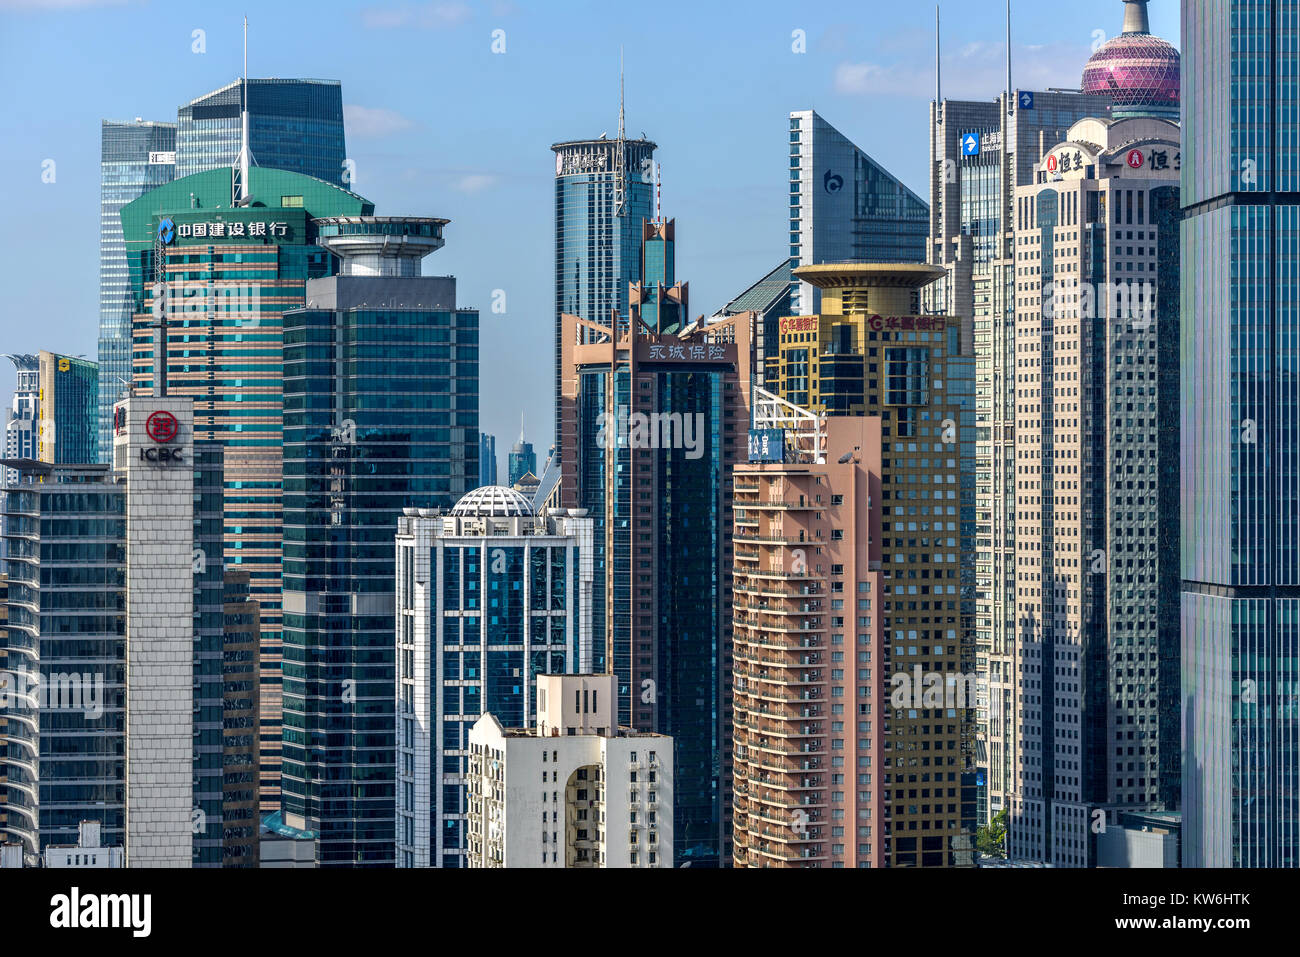 Affollate skyline di Shanghai - un primo piano di affollate ufficio moderno e gli edifici residenziali con sunny blue sky in, Lujiazui Pudong, Shanghai, Cina. Foto Stock